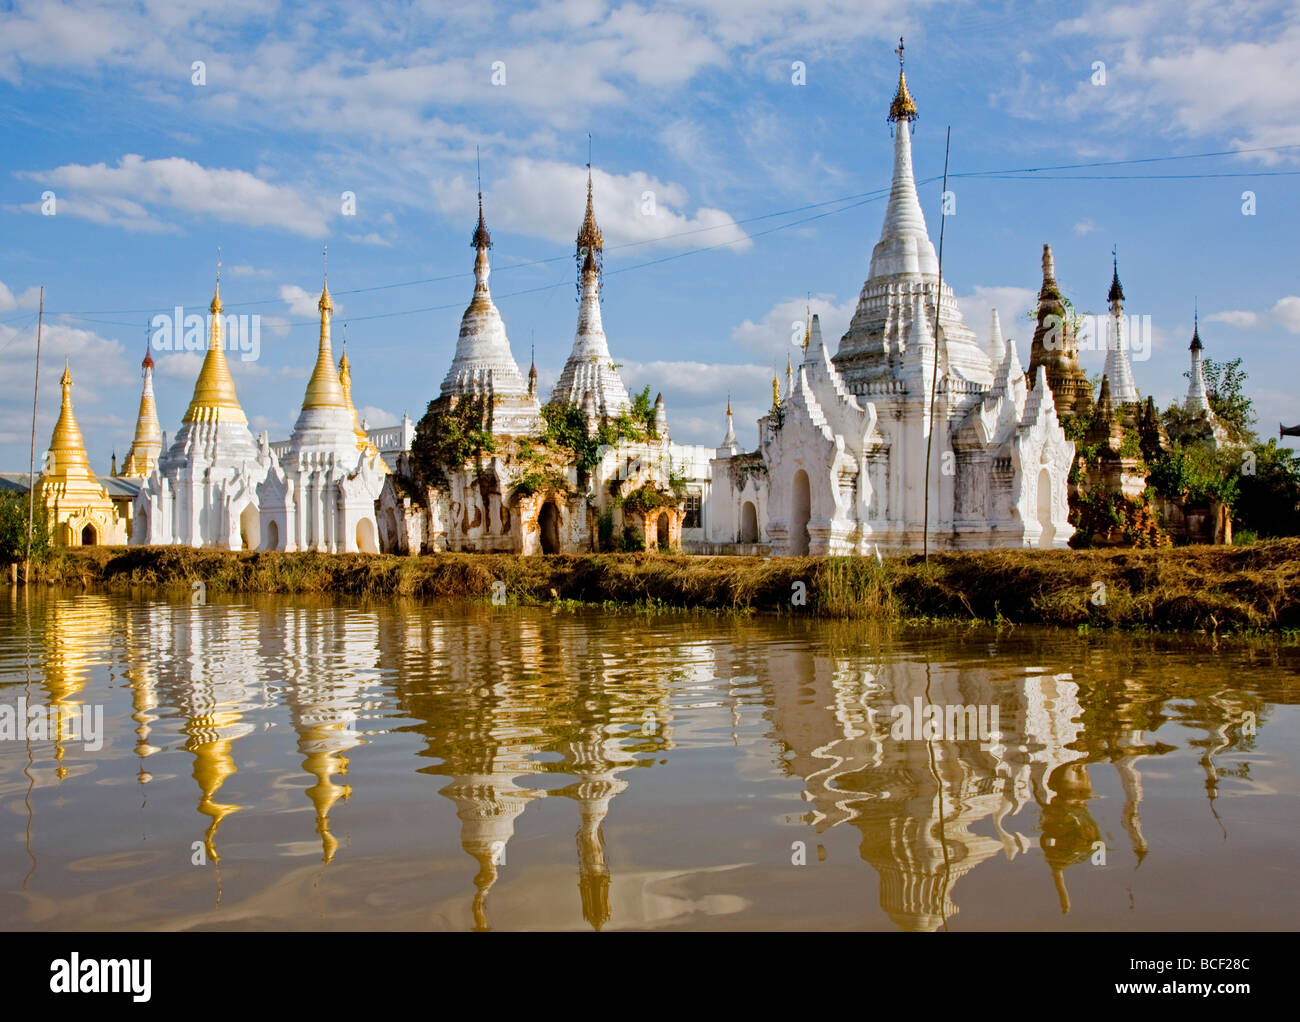 Le Myanmar, Birmanie, le lac Inle. Sanctuaires bouddhistes se reflétant dans les eaux du lac Inle. Banque D'Images